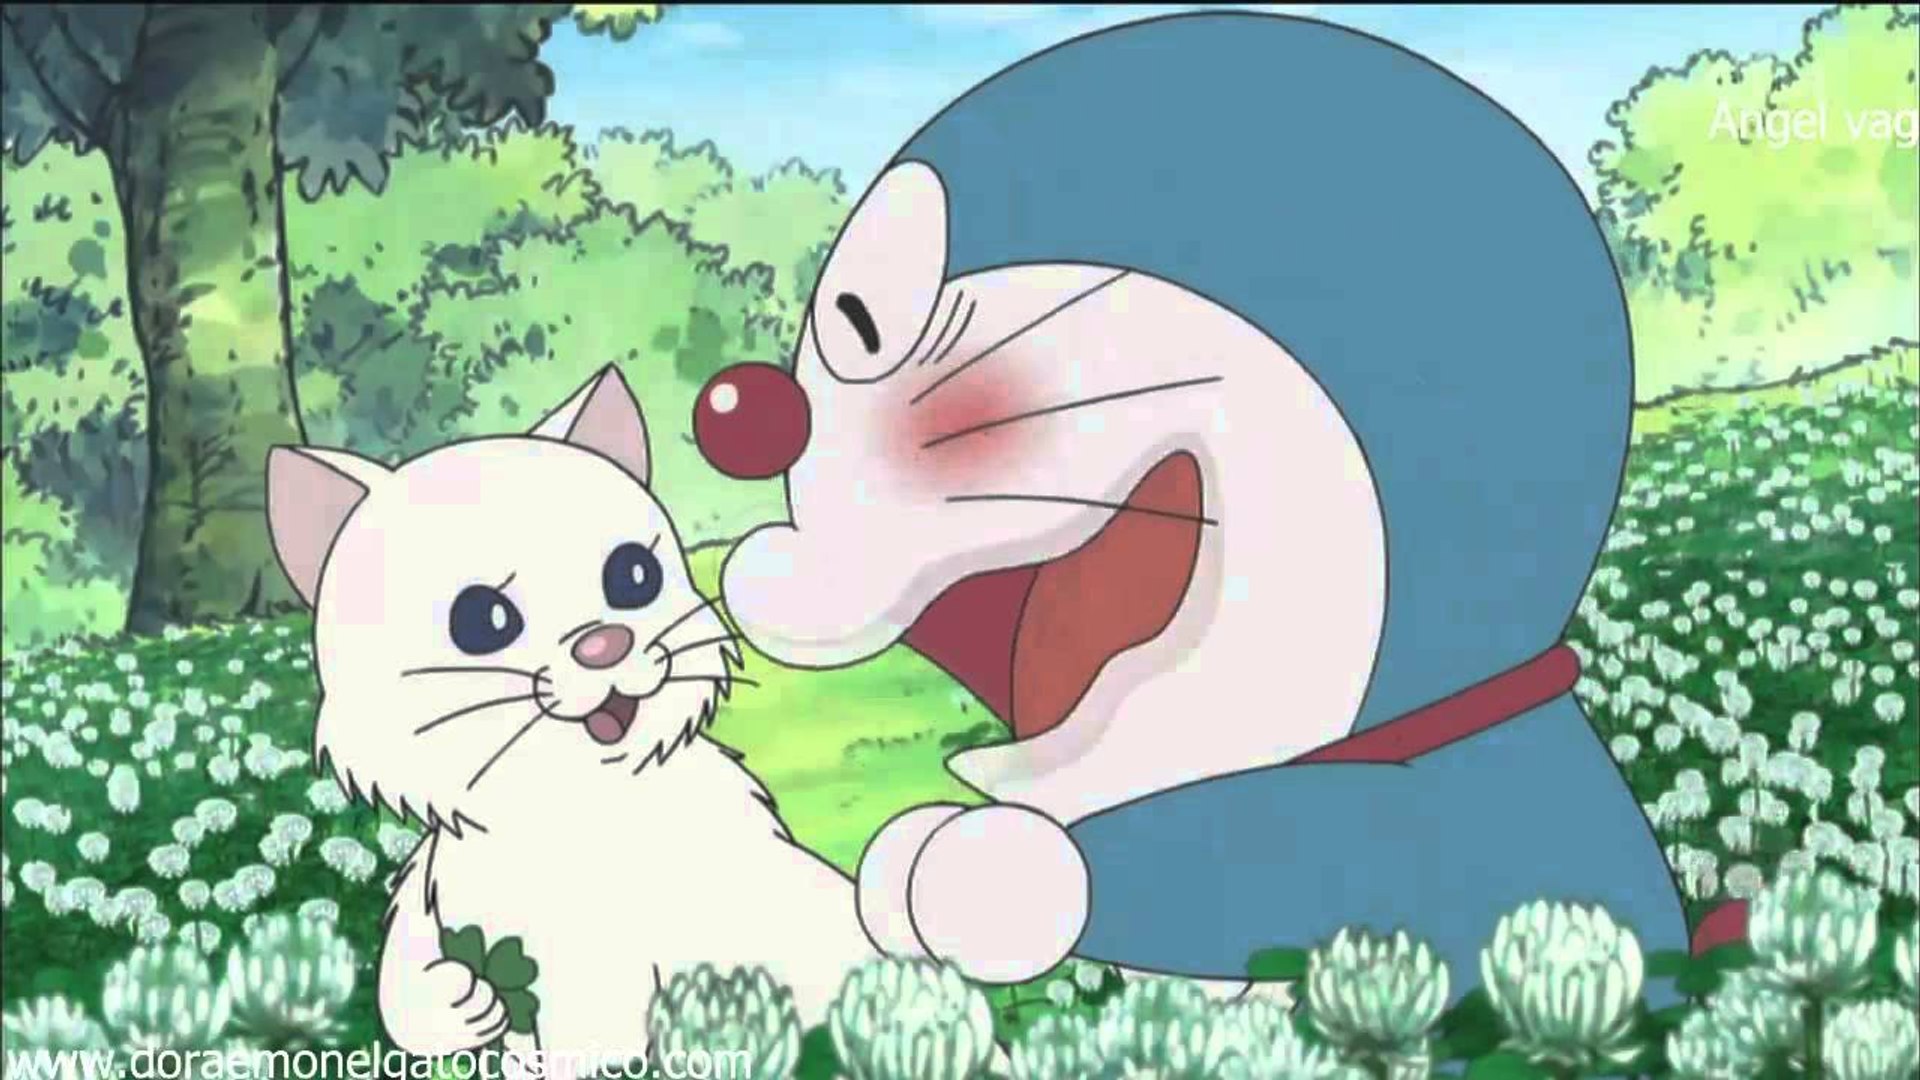 Animation Movies 2016 – Doraemon Movies English Sub Ep2